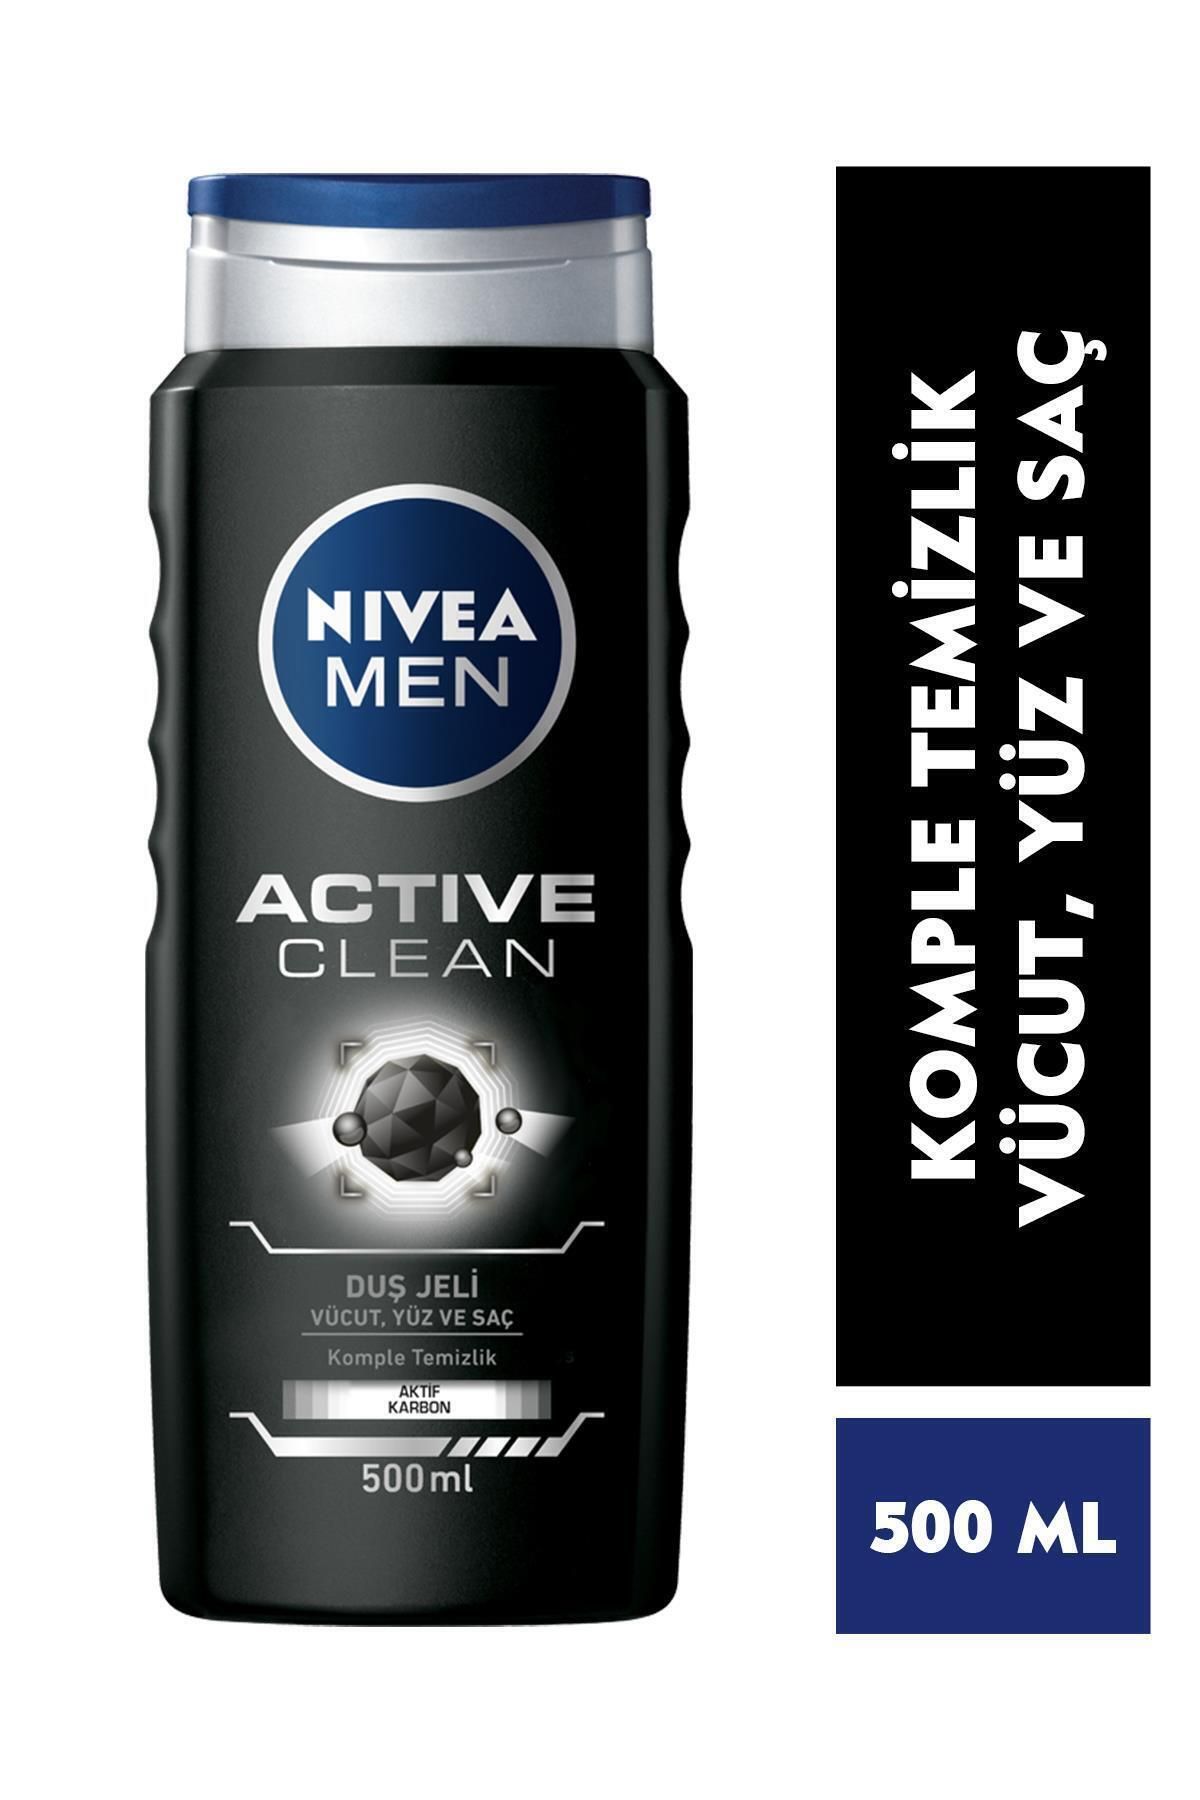 NIVEA MEN Erkek Duş Jeli Active Clean 500 ml,Vücut,Yüz ve Saç İçin, 24 Saat Ferahlık